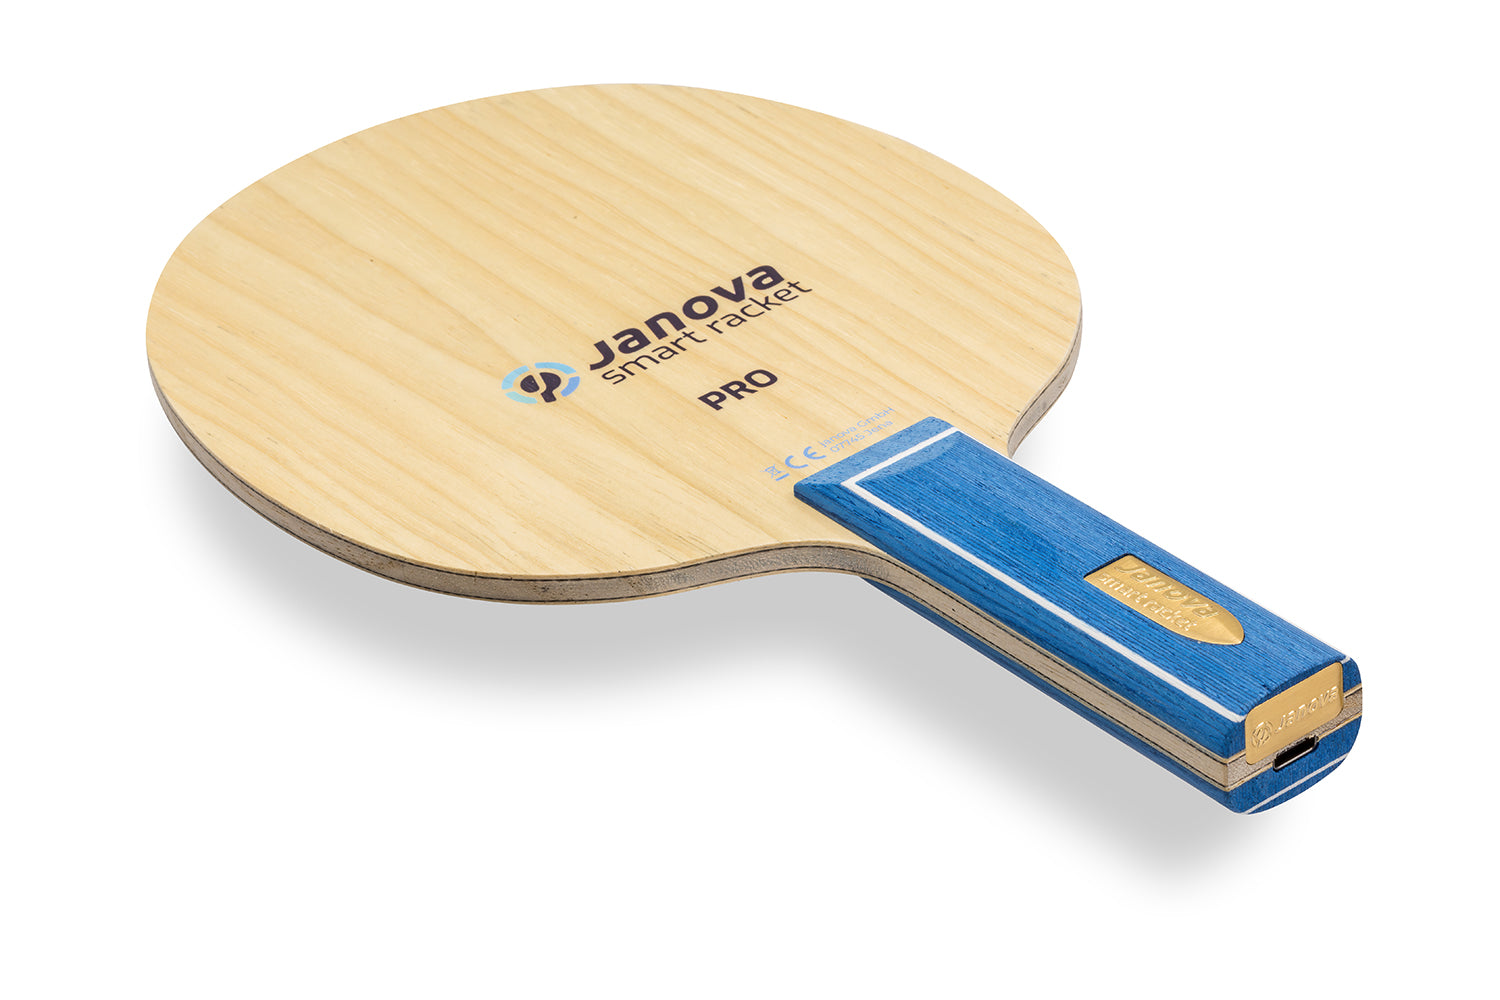 Smart Racket - PRO Tischtennisschläger, gerader Griff mit Janova Sensor und USB-CAnschluss, vor weißem Hintergrund positioniert